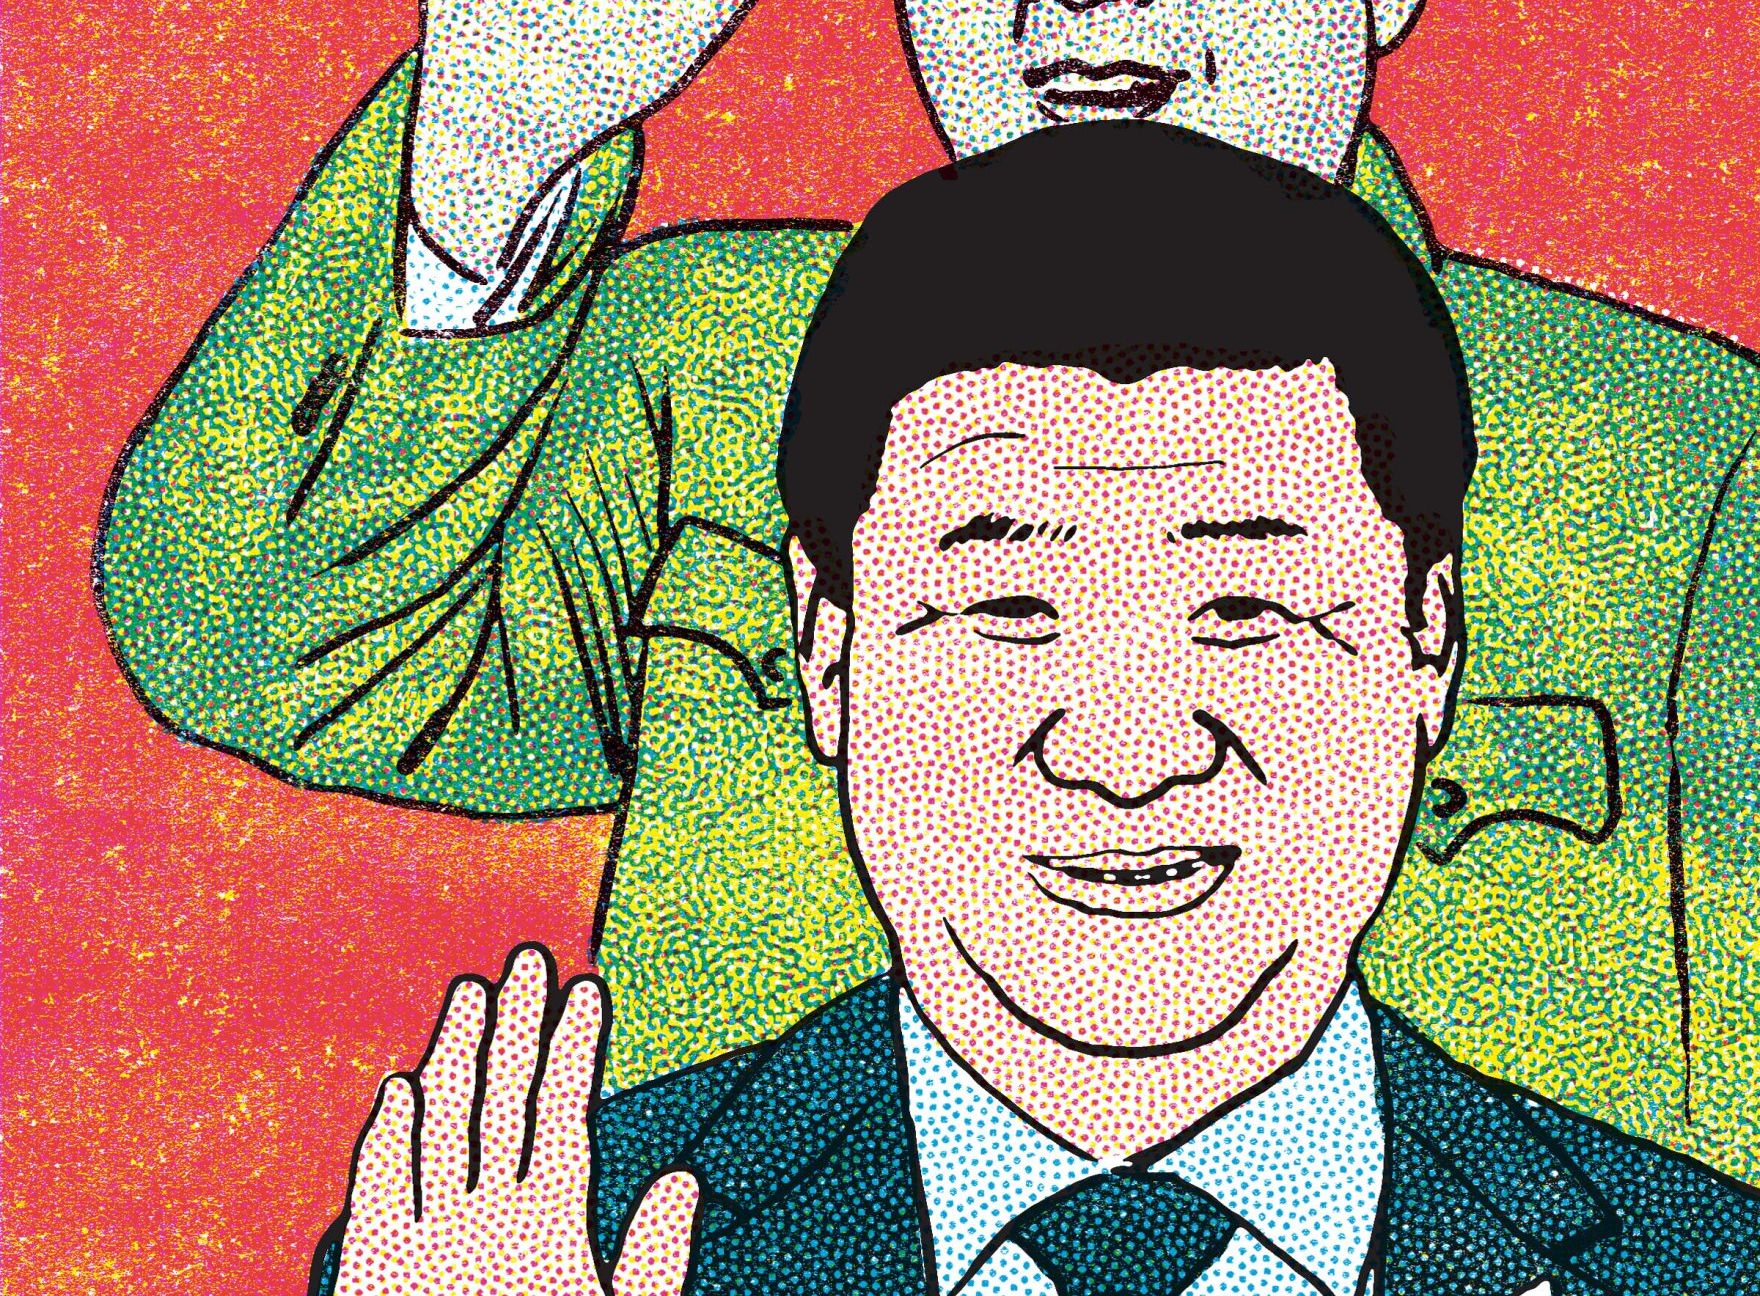 Xi Jinping, président de la Chine conquérante